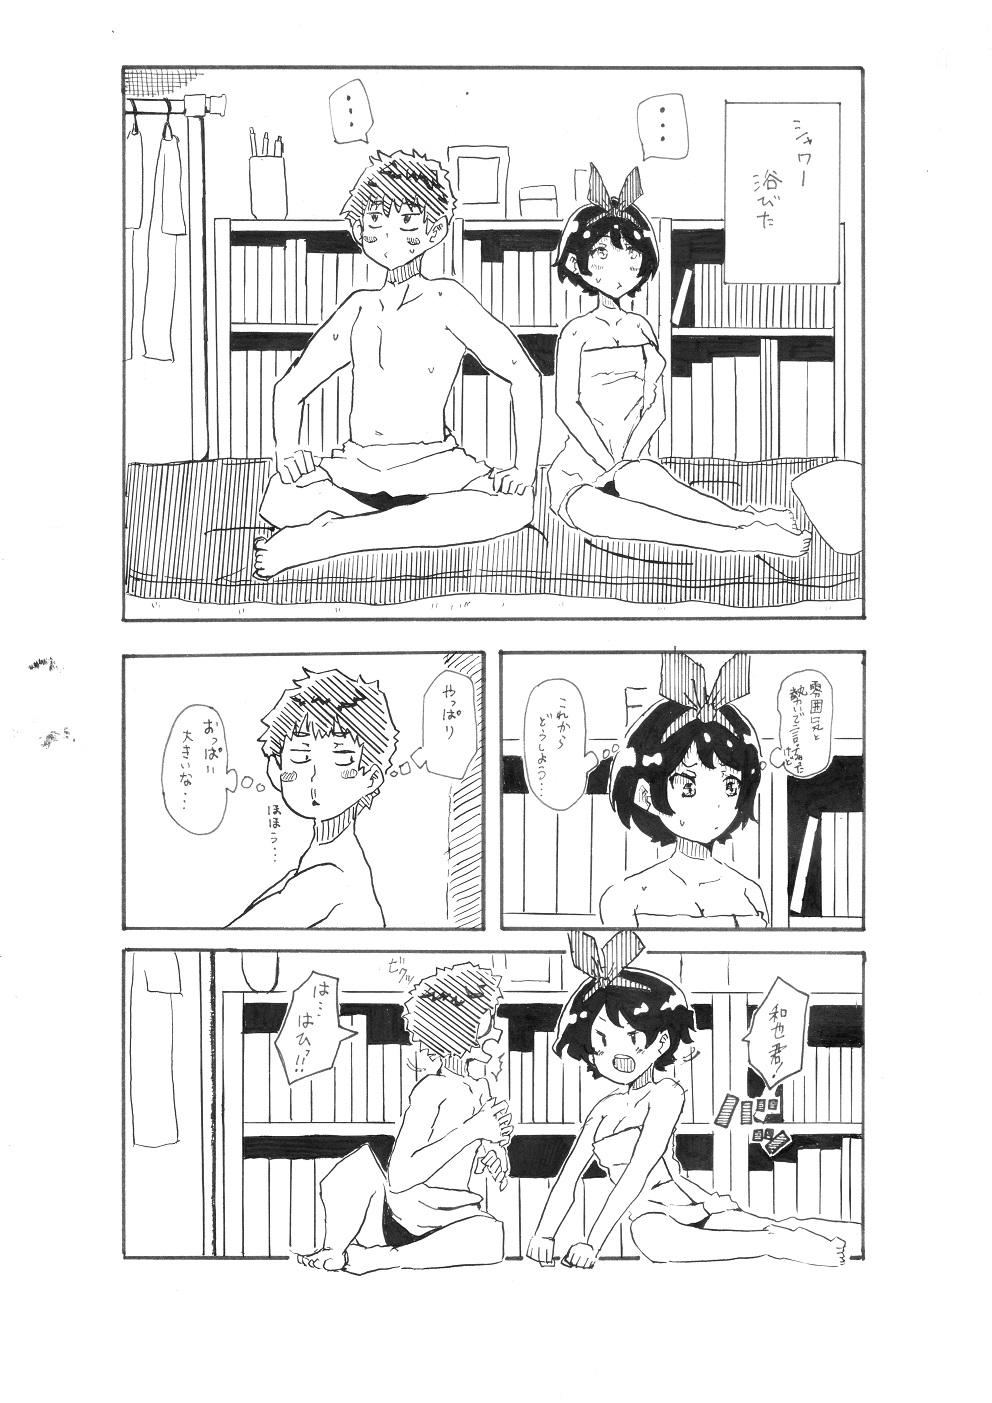 [Pixiv] ユッキーさん | yuckey nekoinu (86798363) [るかちゃんとエッチするだけの漫画] | Rent A Girlfriend 3